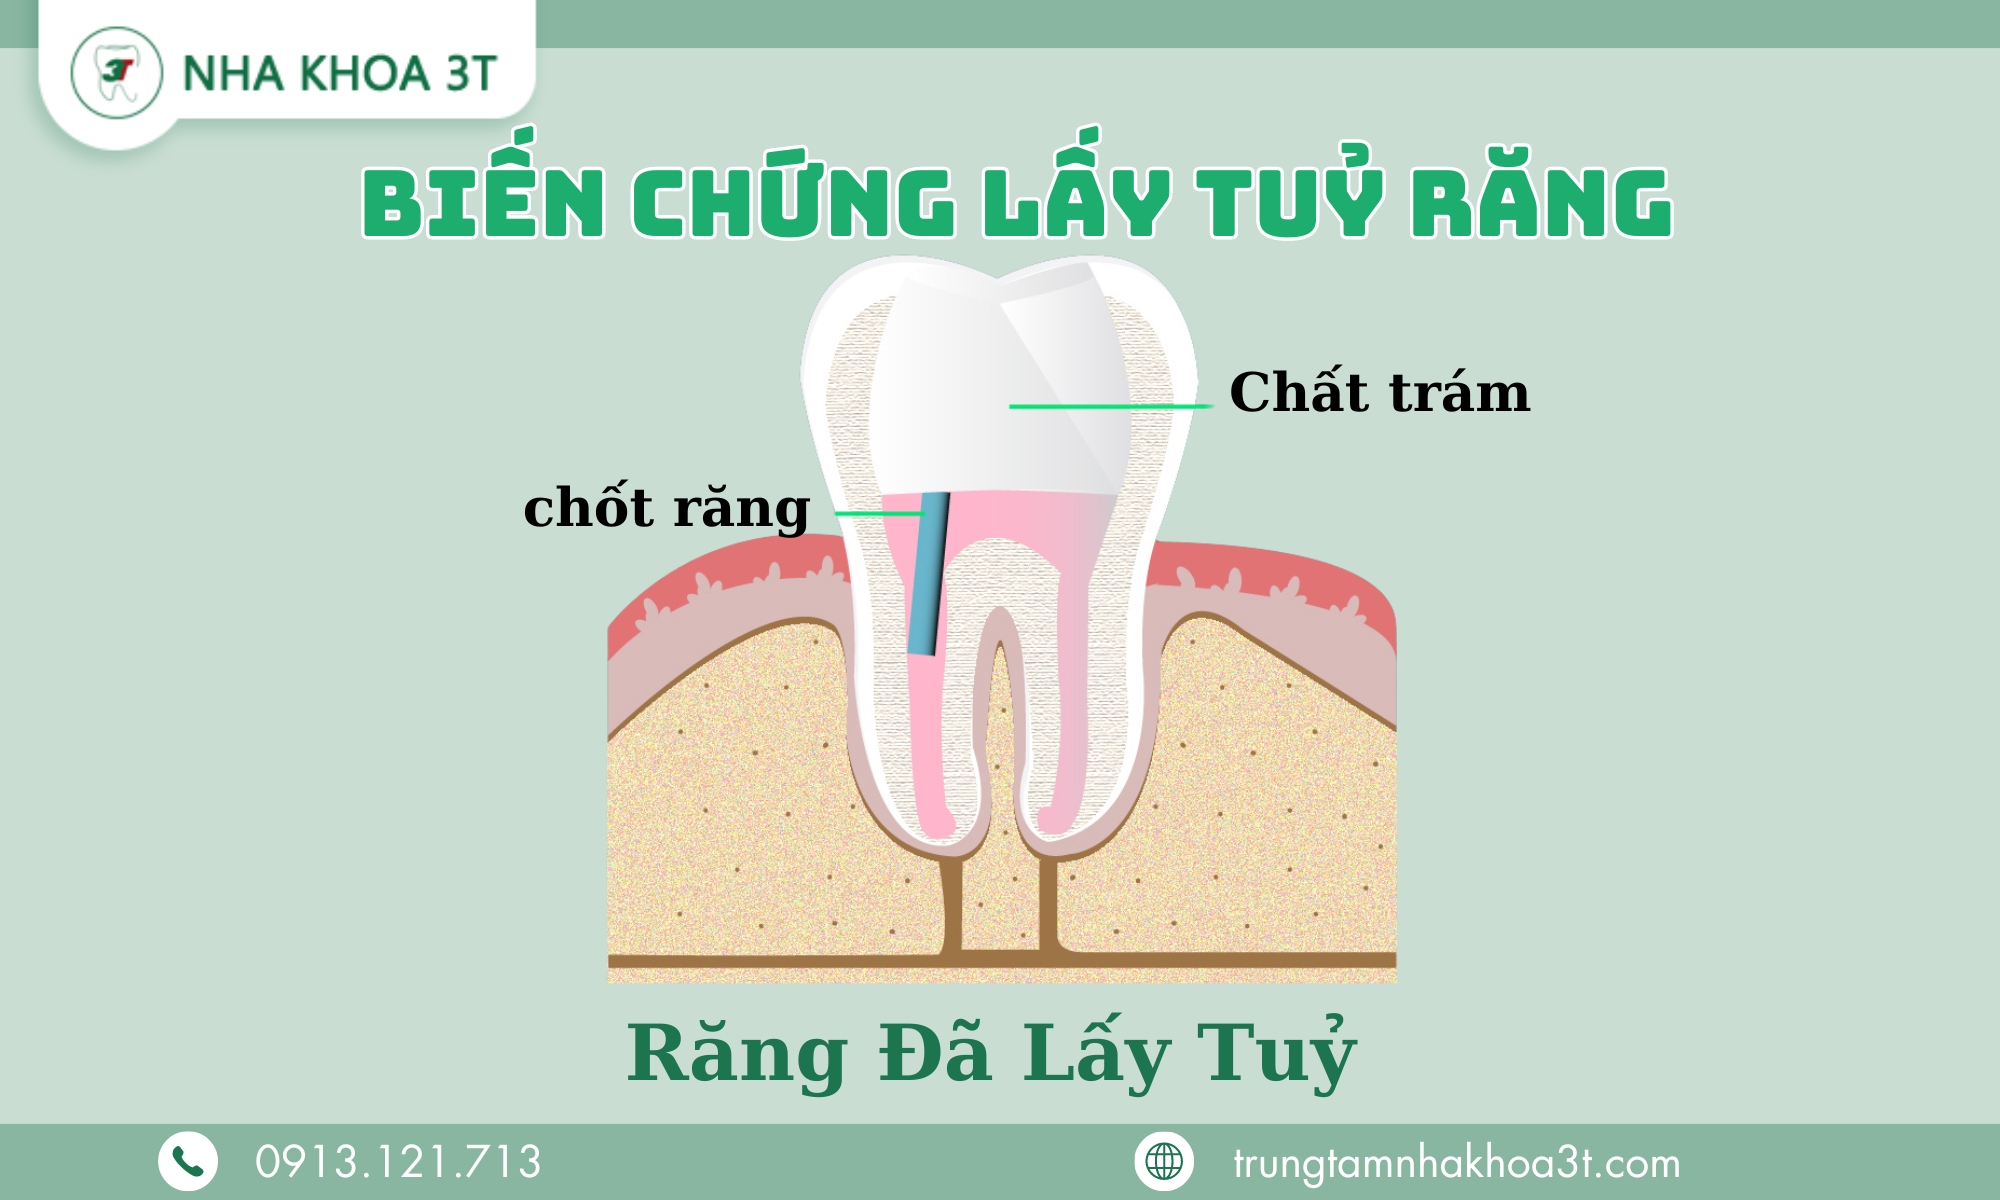 Bien Chung Lay Tuy Rang